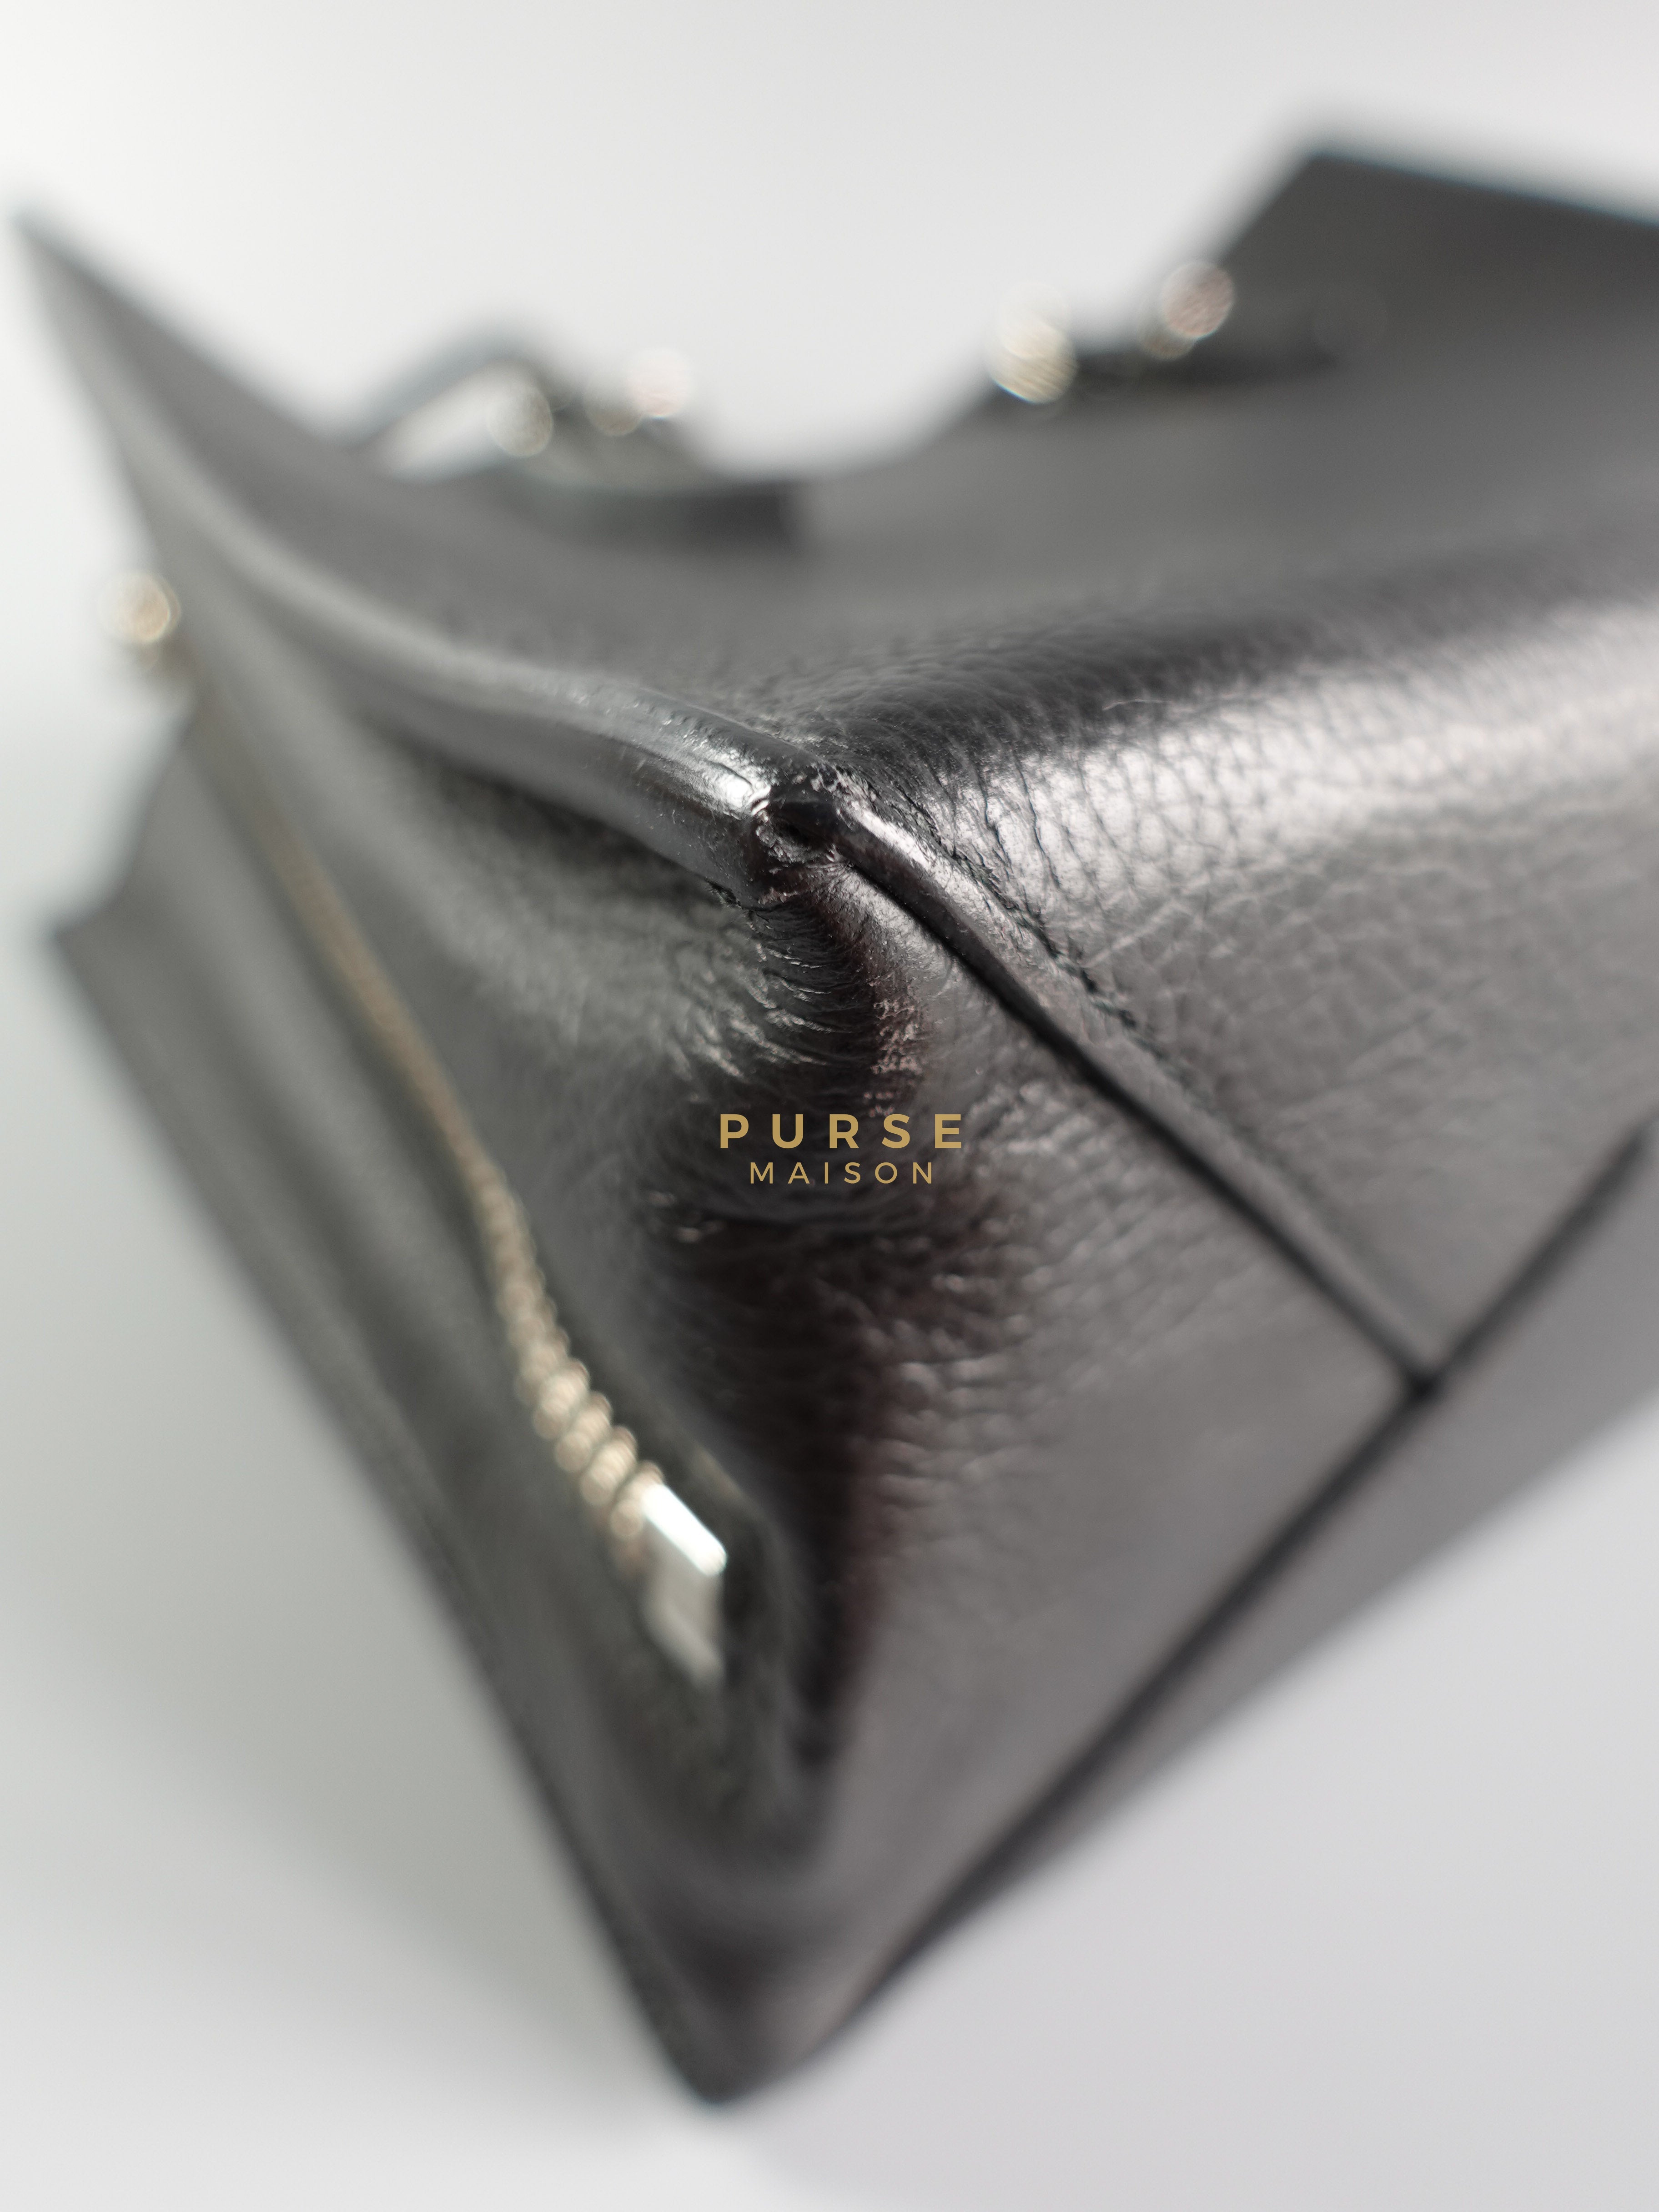 Papier A6 Zip Tote Bag in Black Leather | Purse Maison Luxury Bags Shop